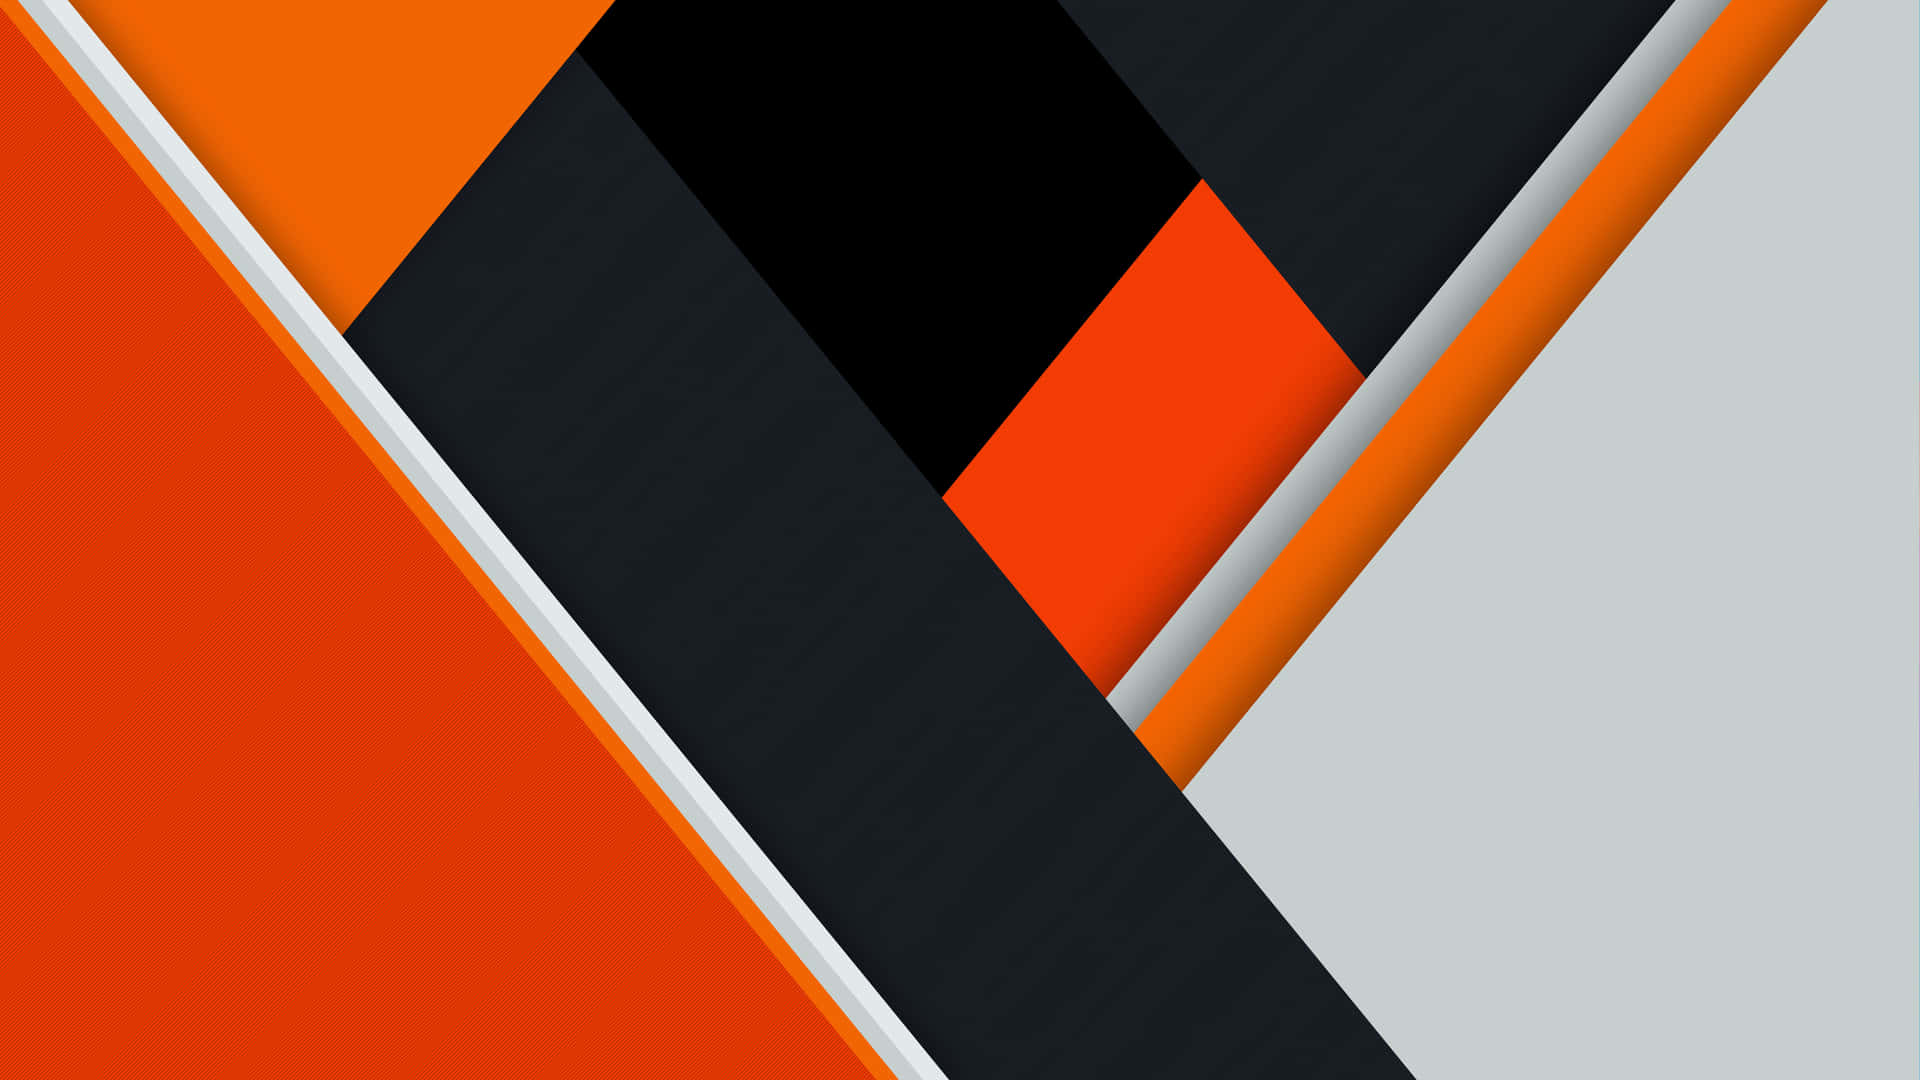 Impresionantefondo De Pantalla Abstracto En Negro Y Naranja. Fondo de pantalla